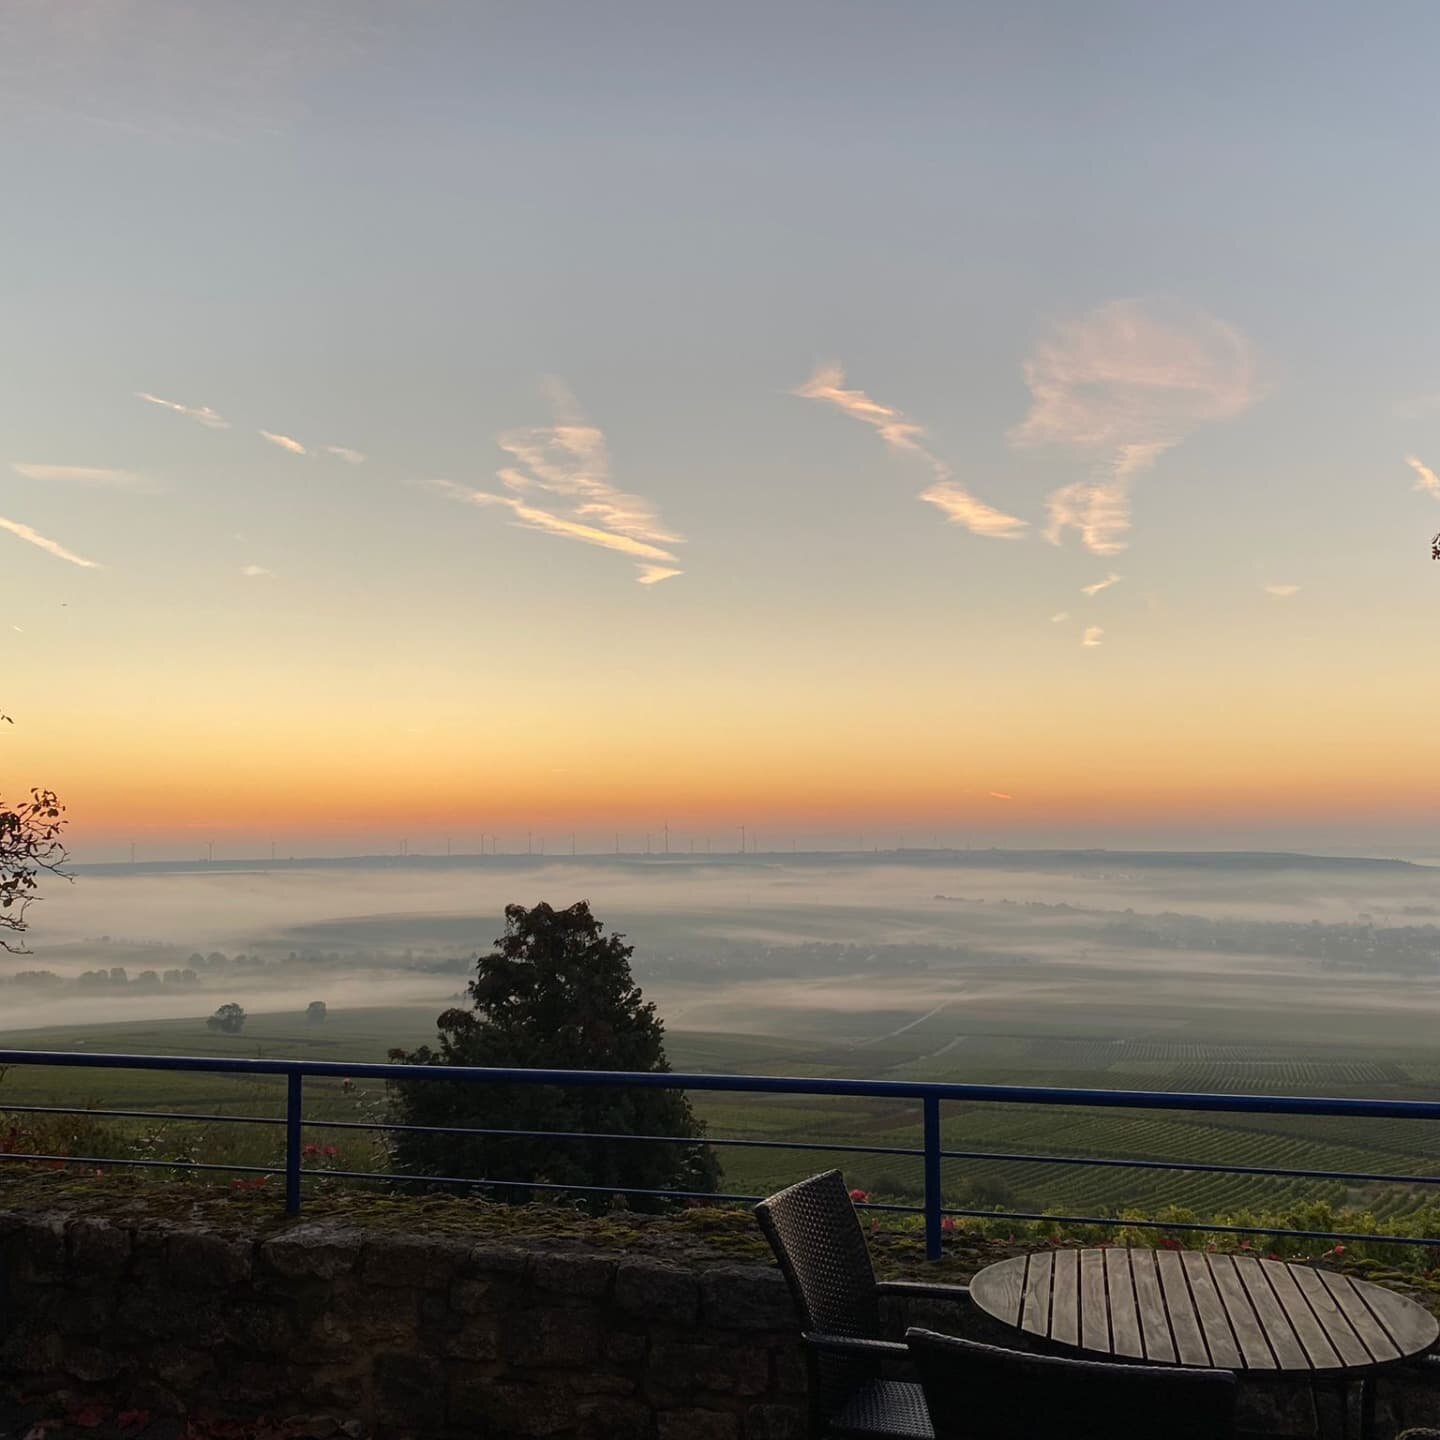 Guten Morgen Welt 😀

Wir freuen uns auf Sie und auf diesen sch&ouml;nen Herbsttag auf unserer Terrasse. 

#gramms #gcrheinhessen #st.johann #restaurant #terrasse #herbsttag #st.johann #sprendlingen #gau-bickelheim #mainz #badkreuznach